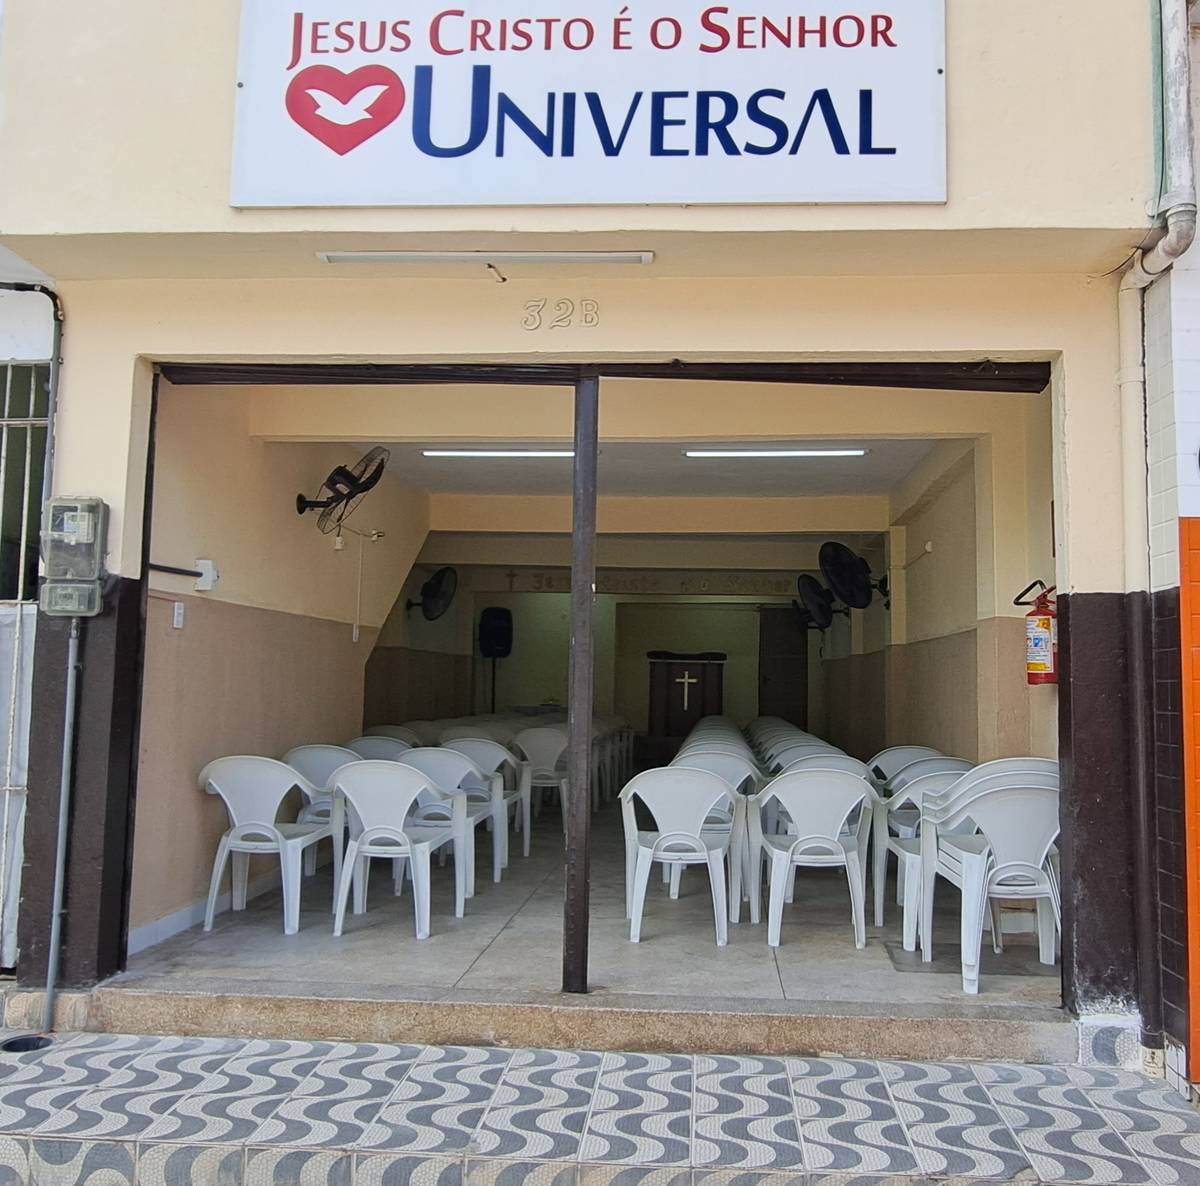 Igreja Universal GUABIRABA - Córrego José Idalino, 32 - Brejo da Guabiraba, Recife - Pernambuco  - 52291070 - Brasil, 32 - Brejo da Guabiraba Recife - Pernambuco - Brasil